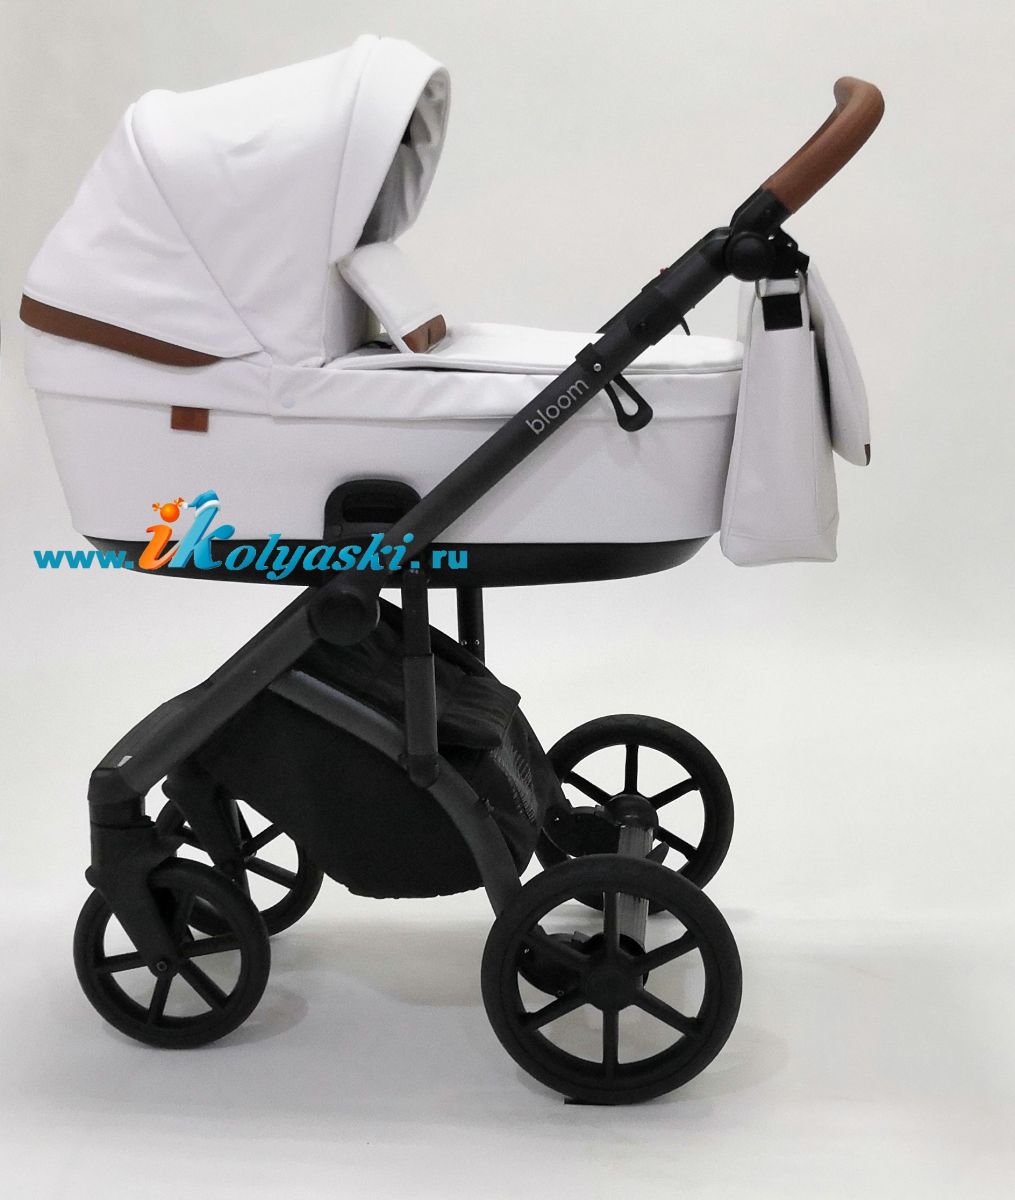 Roan Bloom 3 в 1 детская коляска для новорожденного на гелиевых бескамерных поворотных колесах с прогулочным блоком и автокреслом - купить в интернет-магазине в Москве с доставкой по РФ - цвет  Caramel White